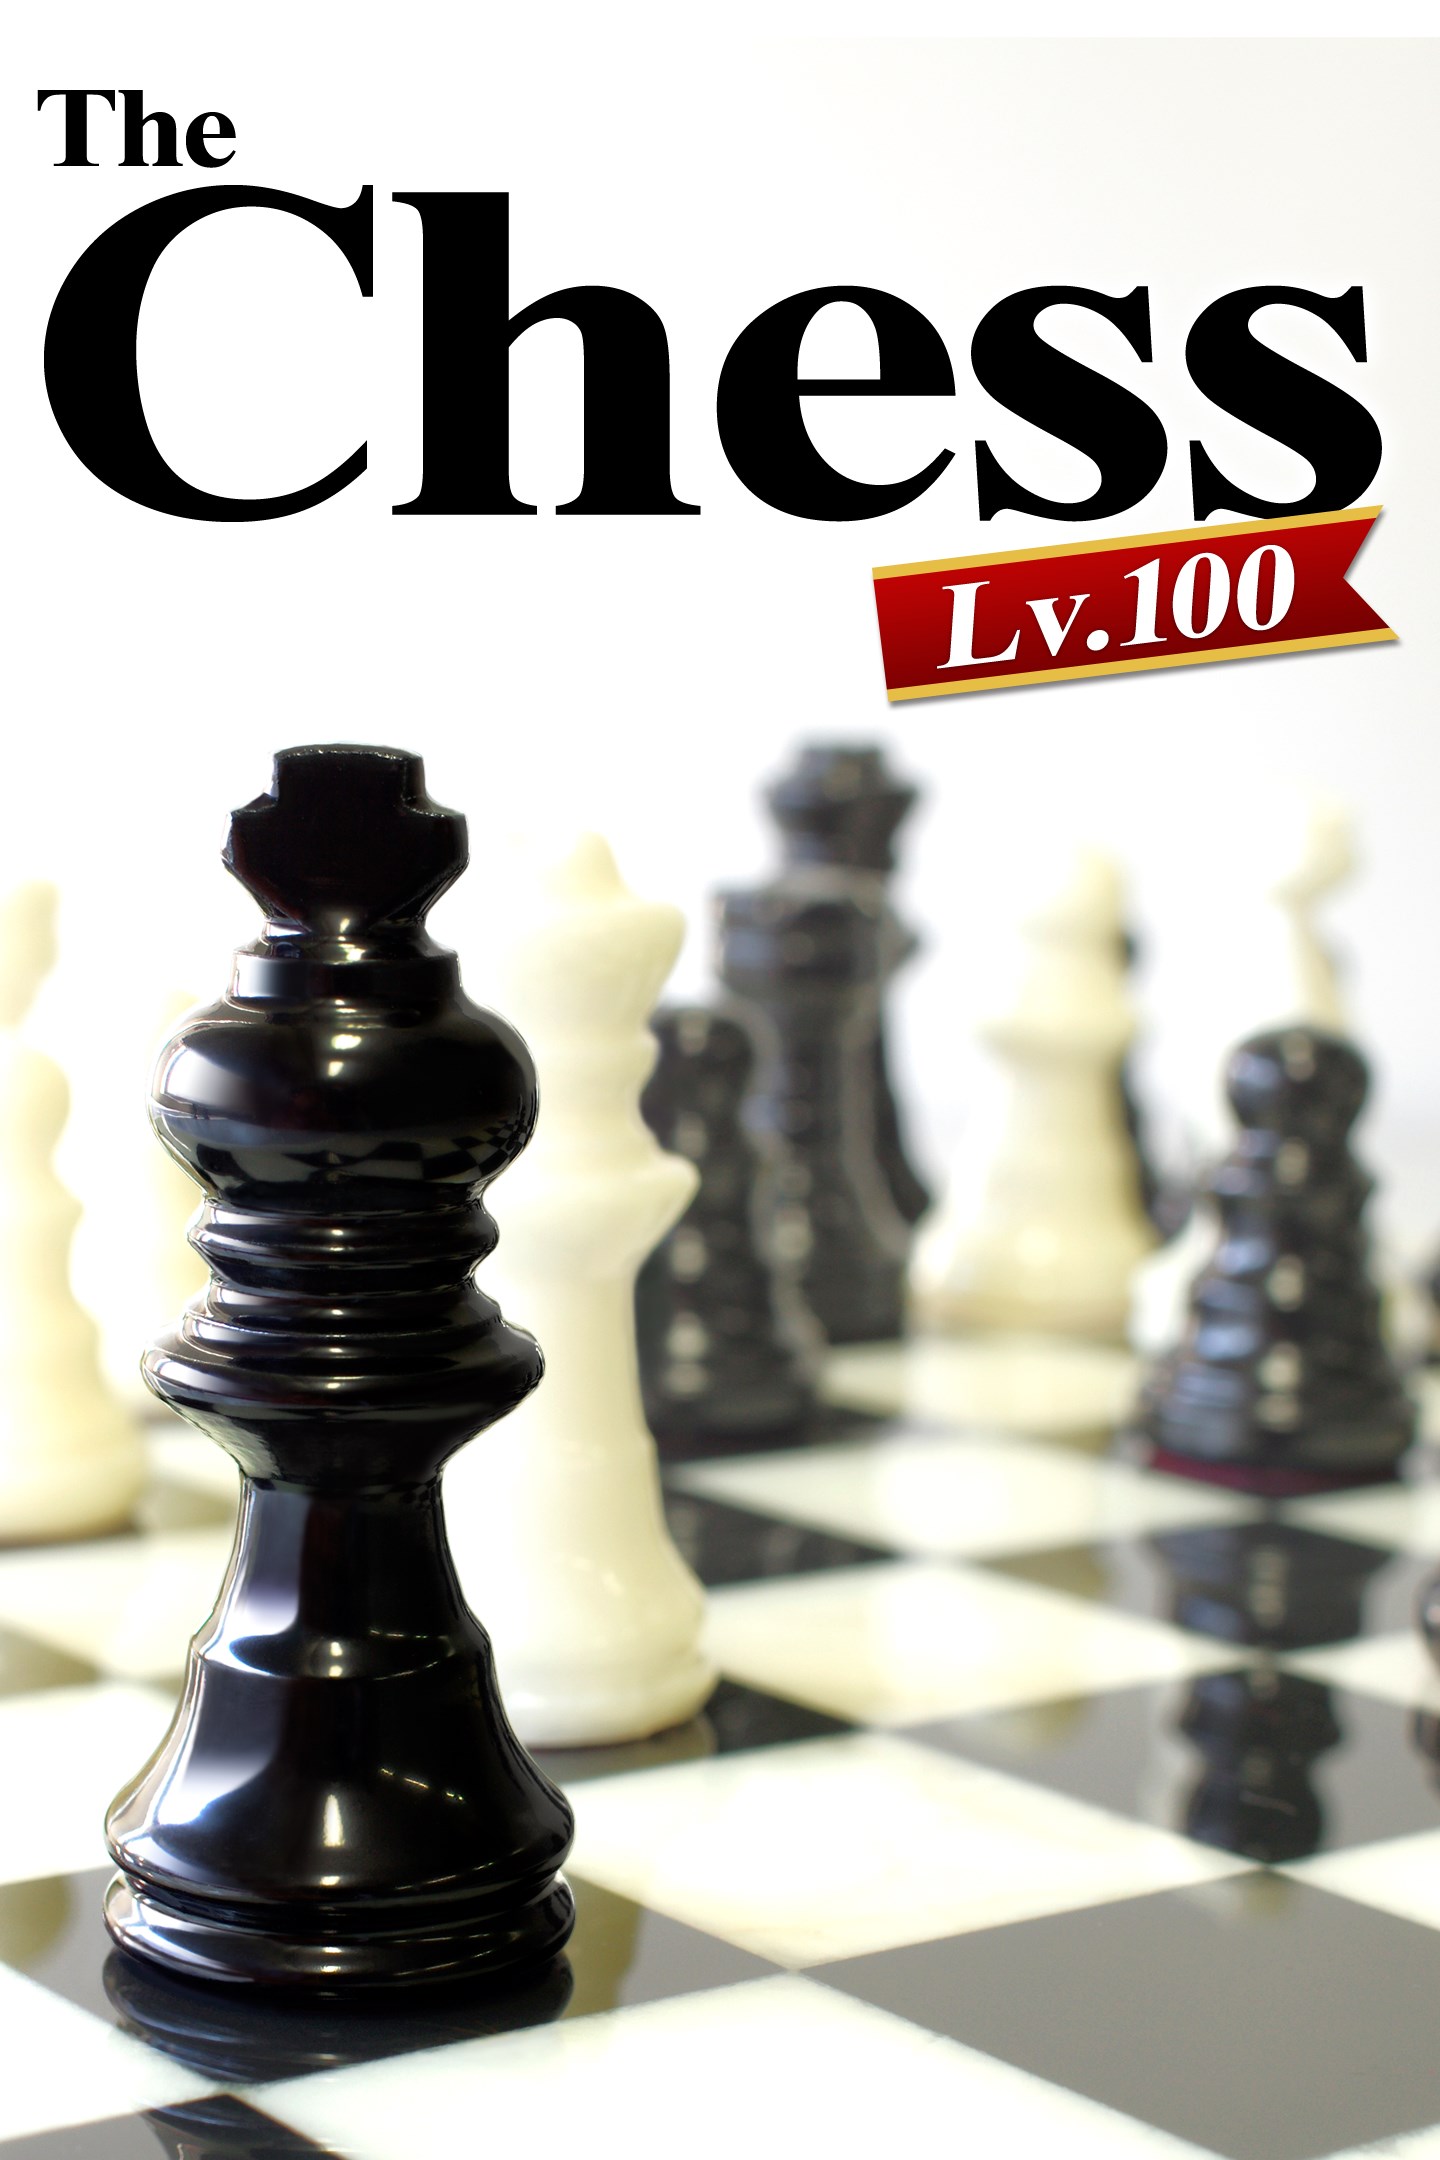 ザ・チェス レベル100 を入手 - Microsoft Store ja-JP